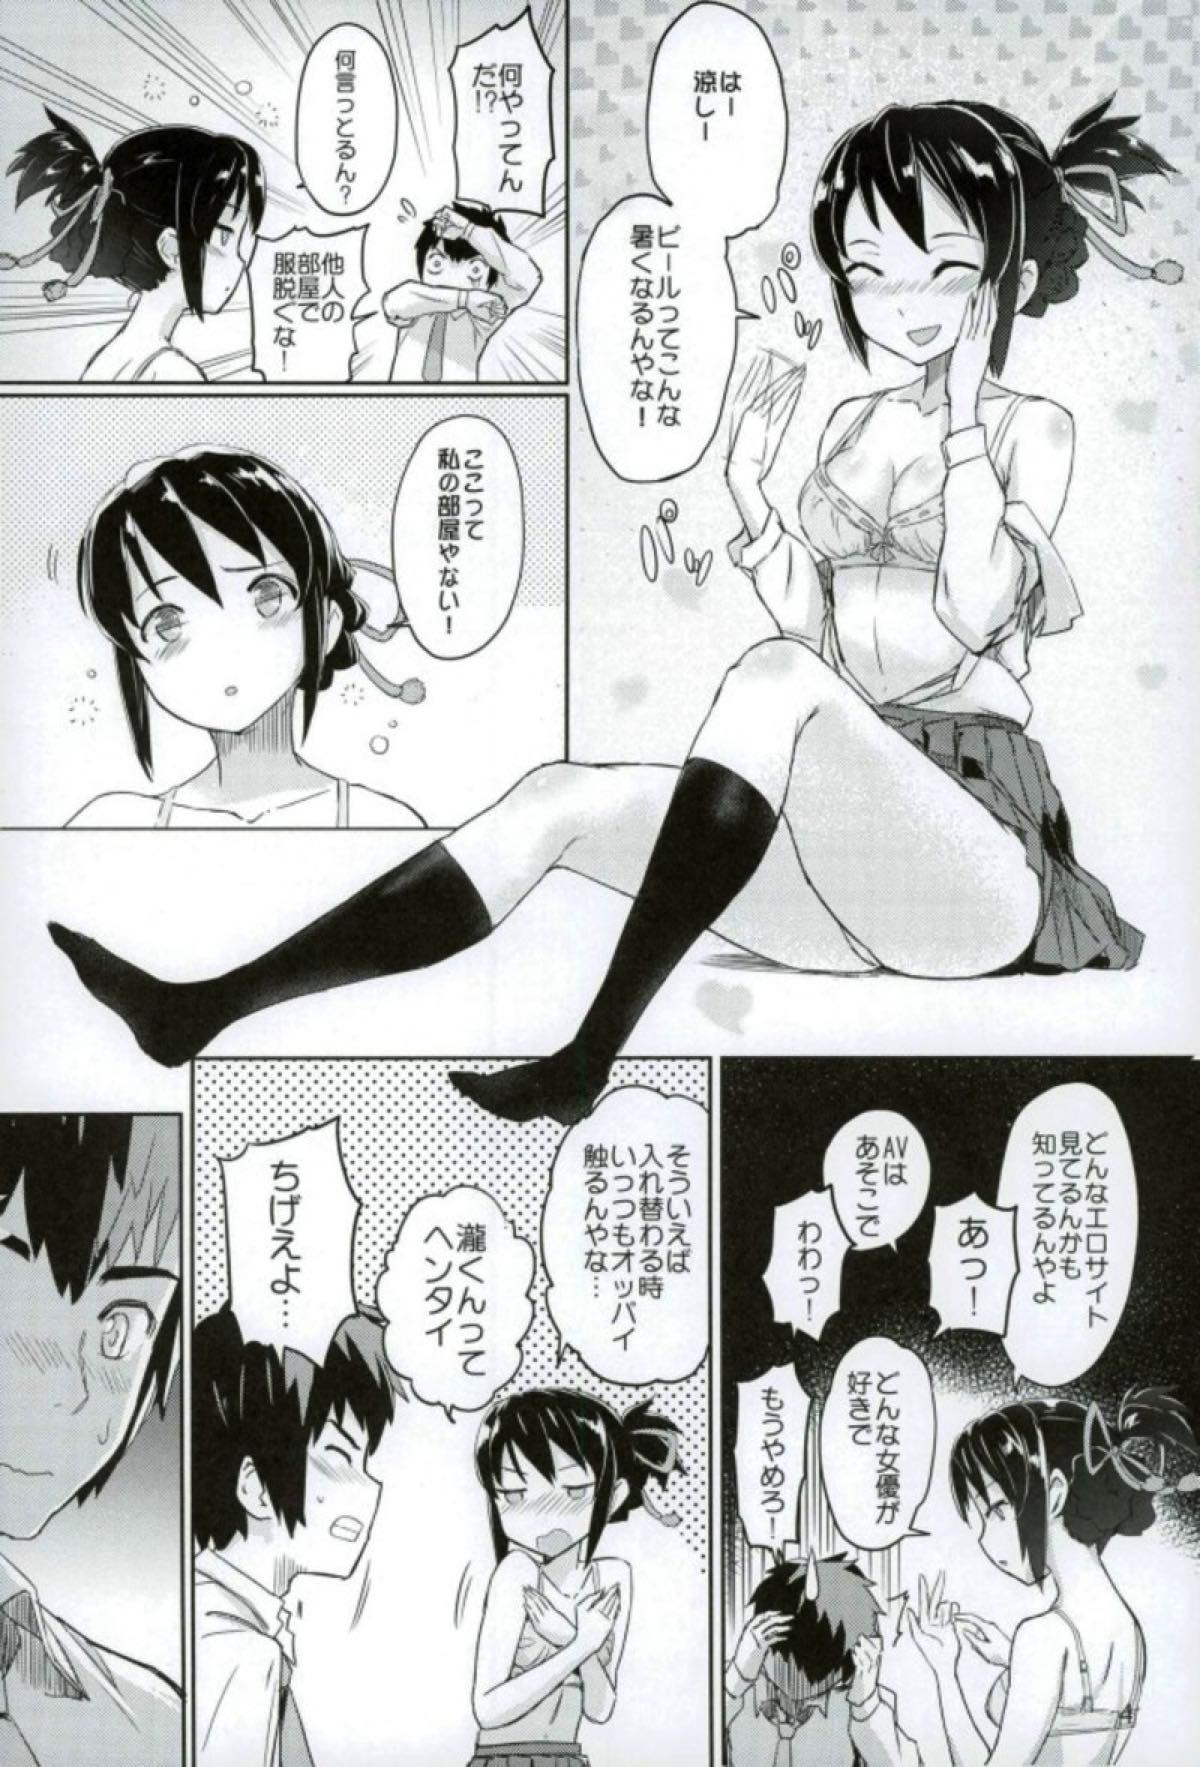 Gapes Gaping Asshole Kimi to Boku no Musubi - Kimi no na wa. Gloryholes - Page 5